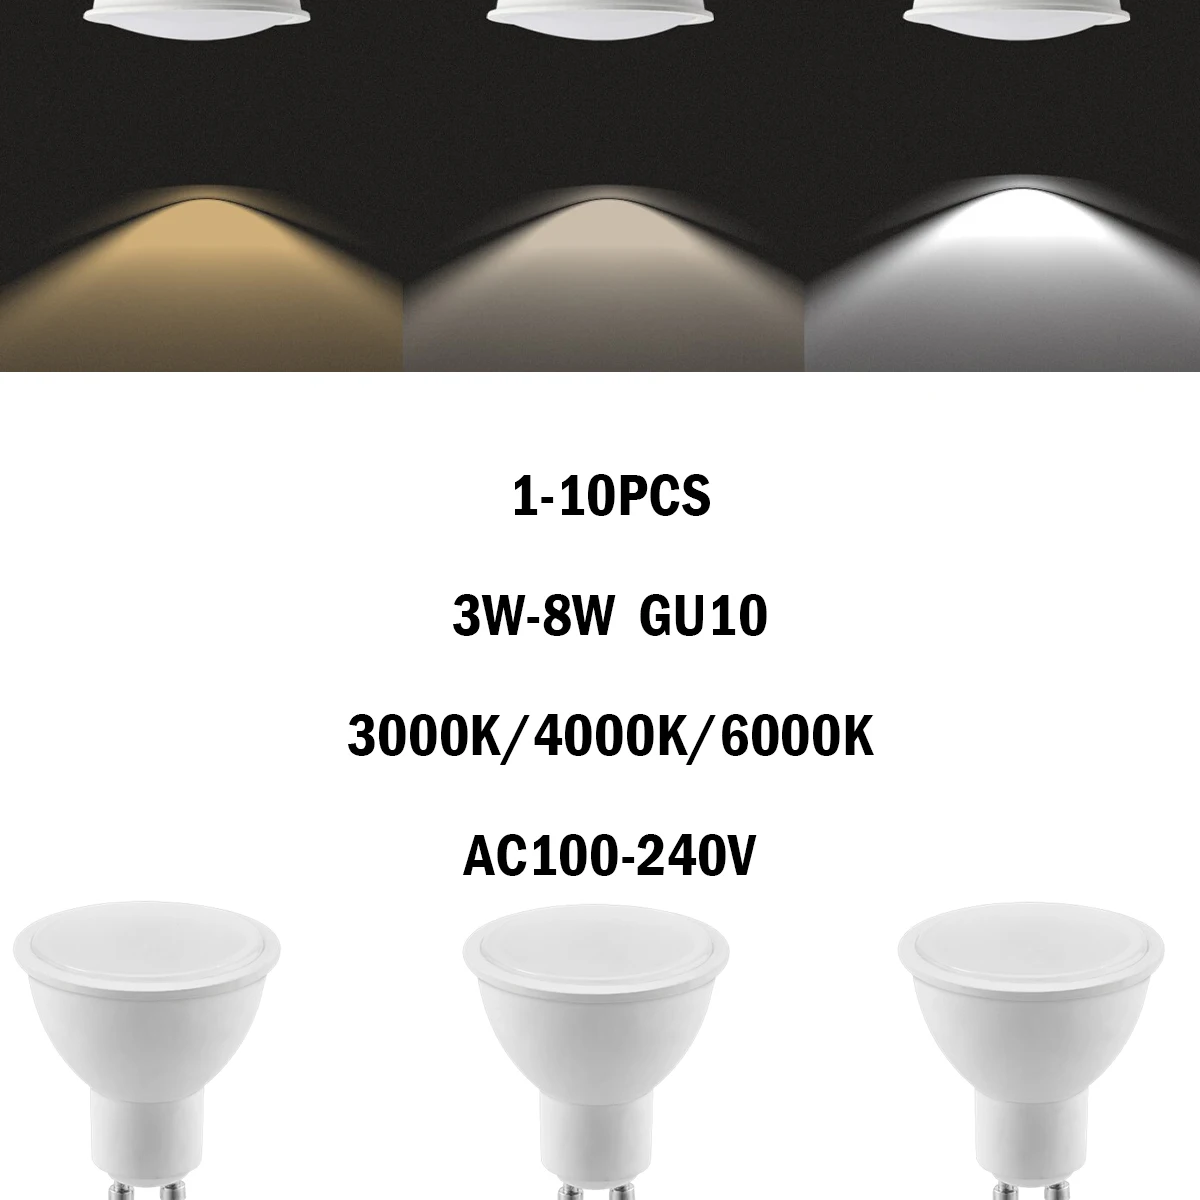 

1-10Pcs LED Spotlight GU10 AC110V/220V No Flicker 3000K/4000K/6000K 3W-8W EU CE certification for Interiors Lighting